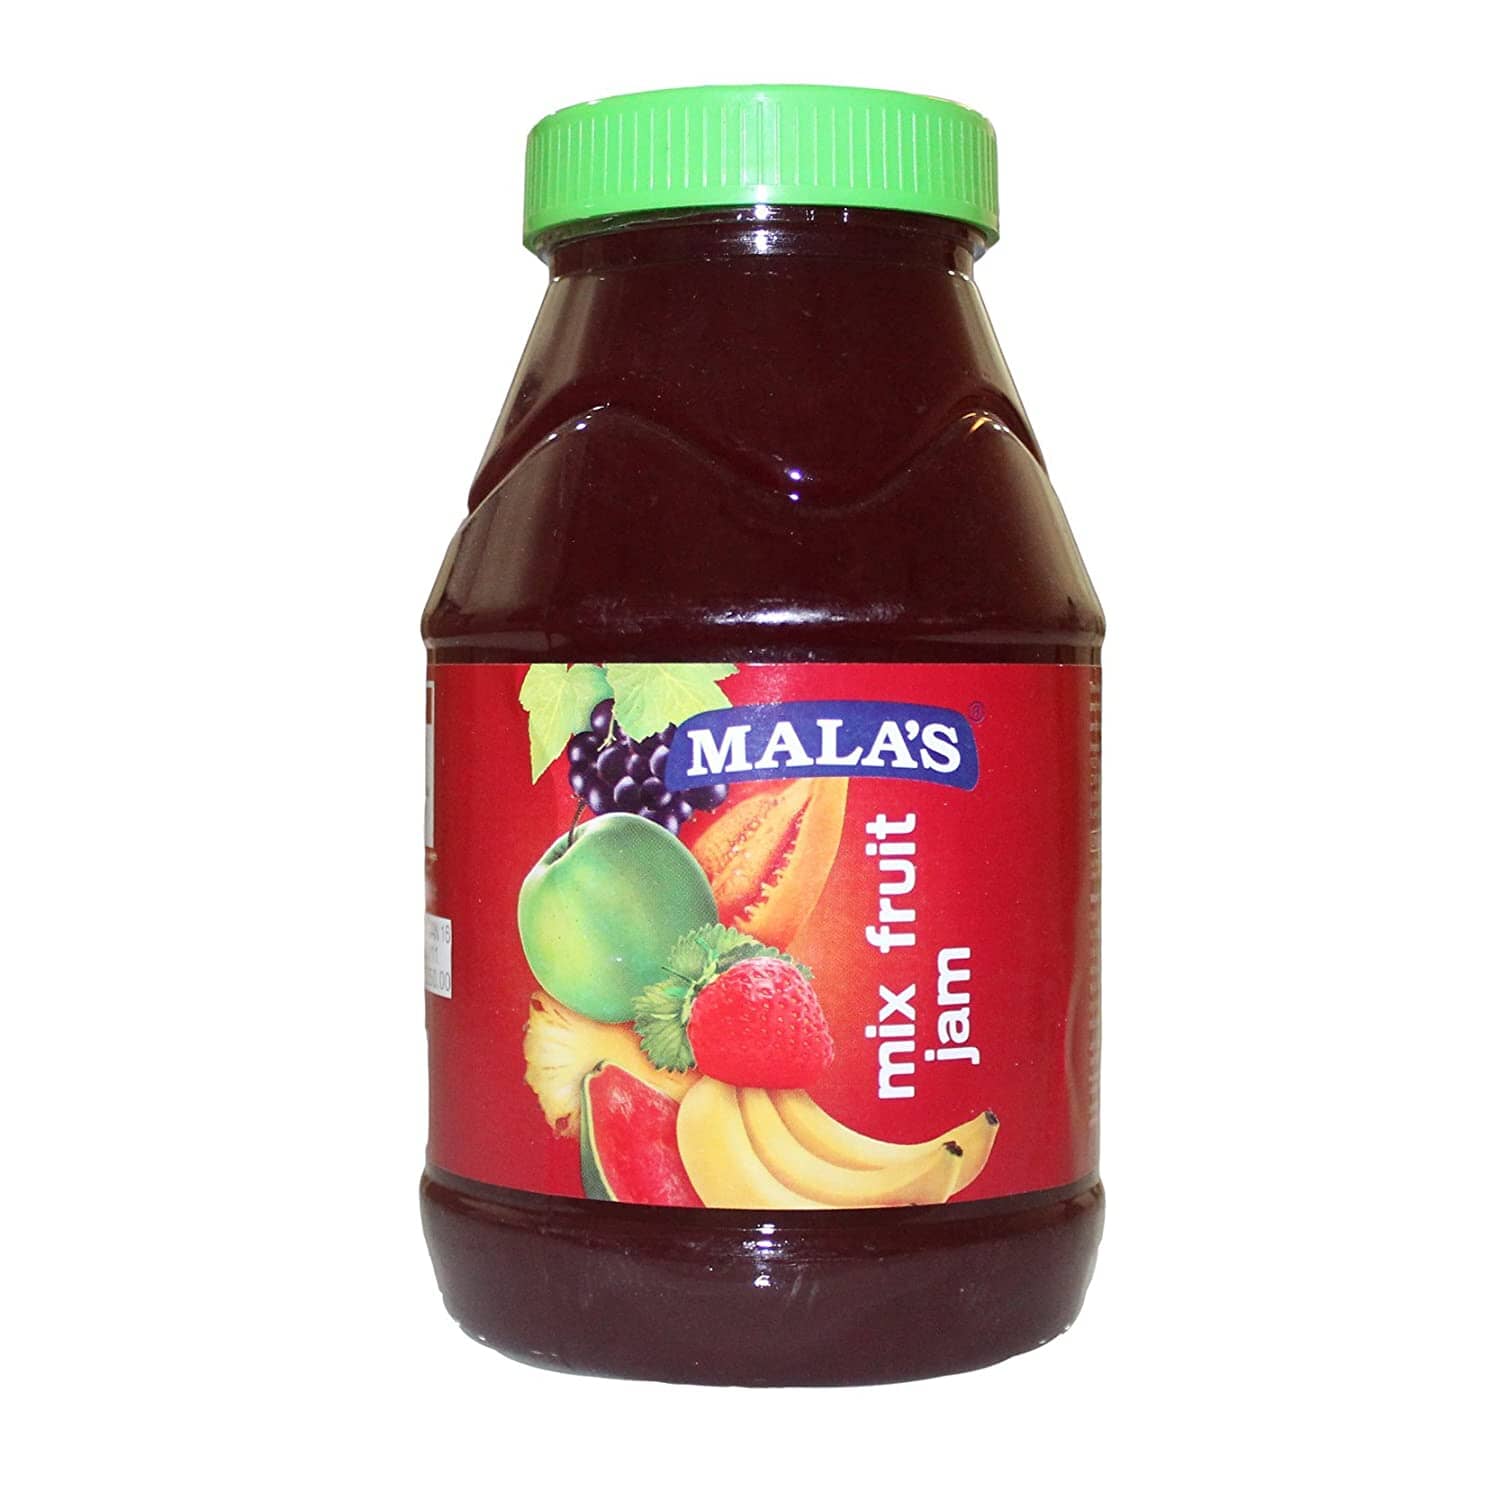 Malas Mixed Fruit Jam 1Kg Pet Jar JAM Mala's